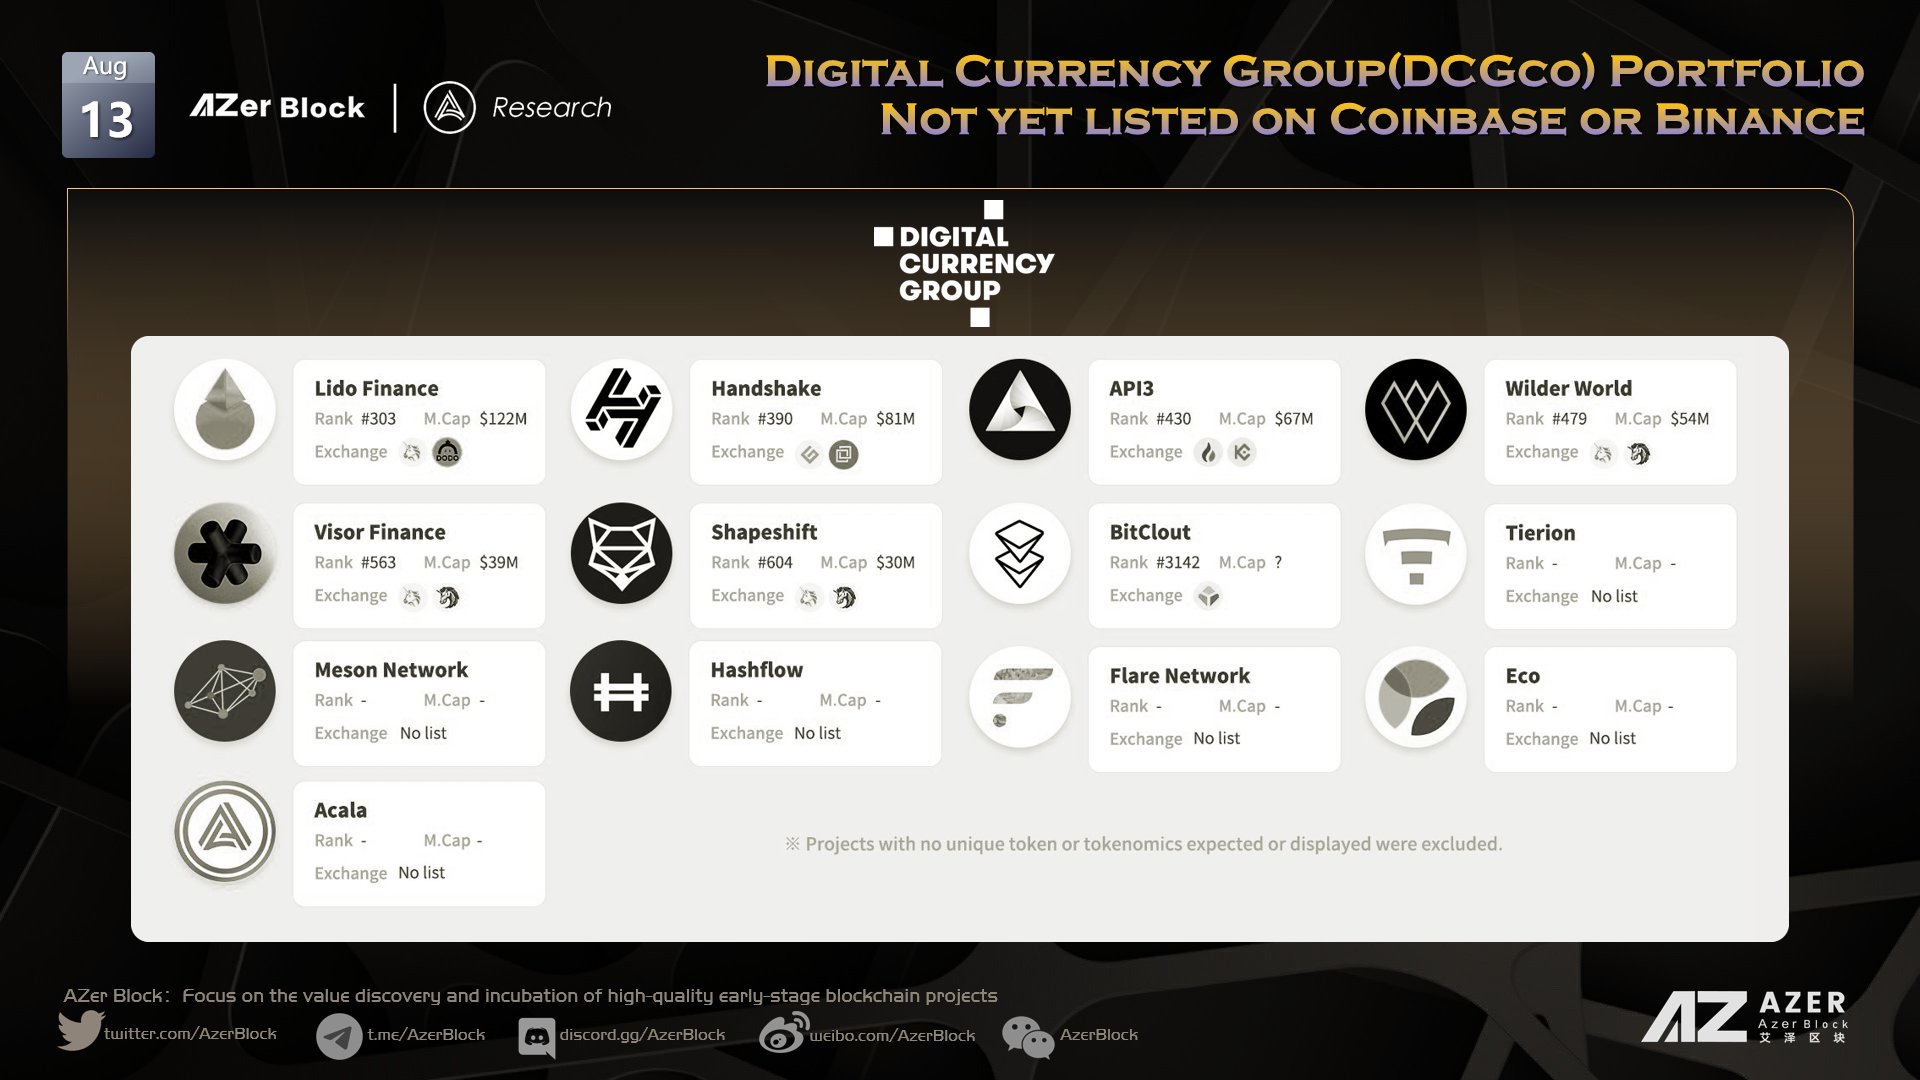 AzerCapital Digital Currency Group Portfolio